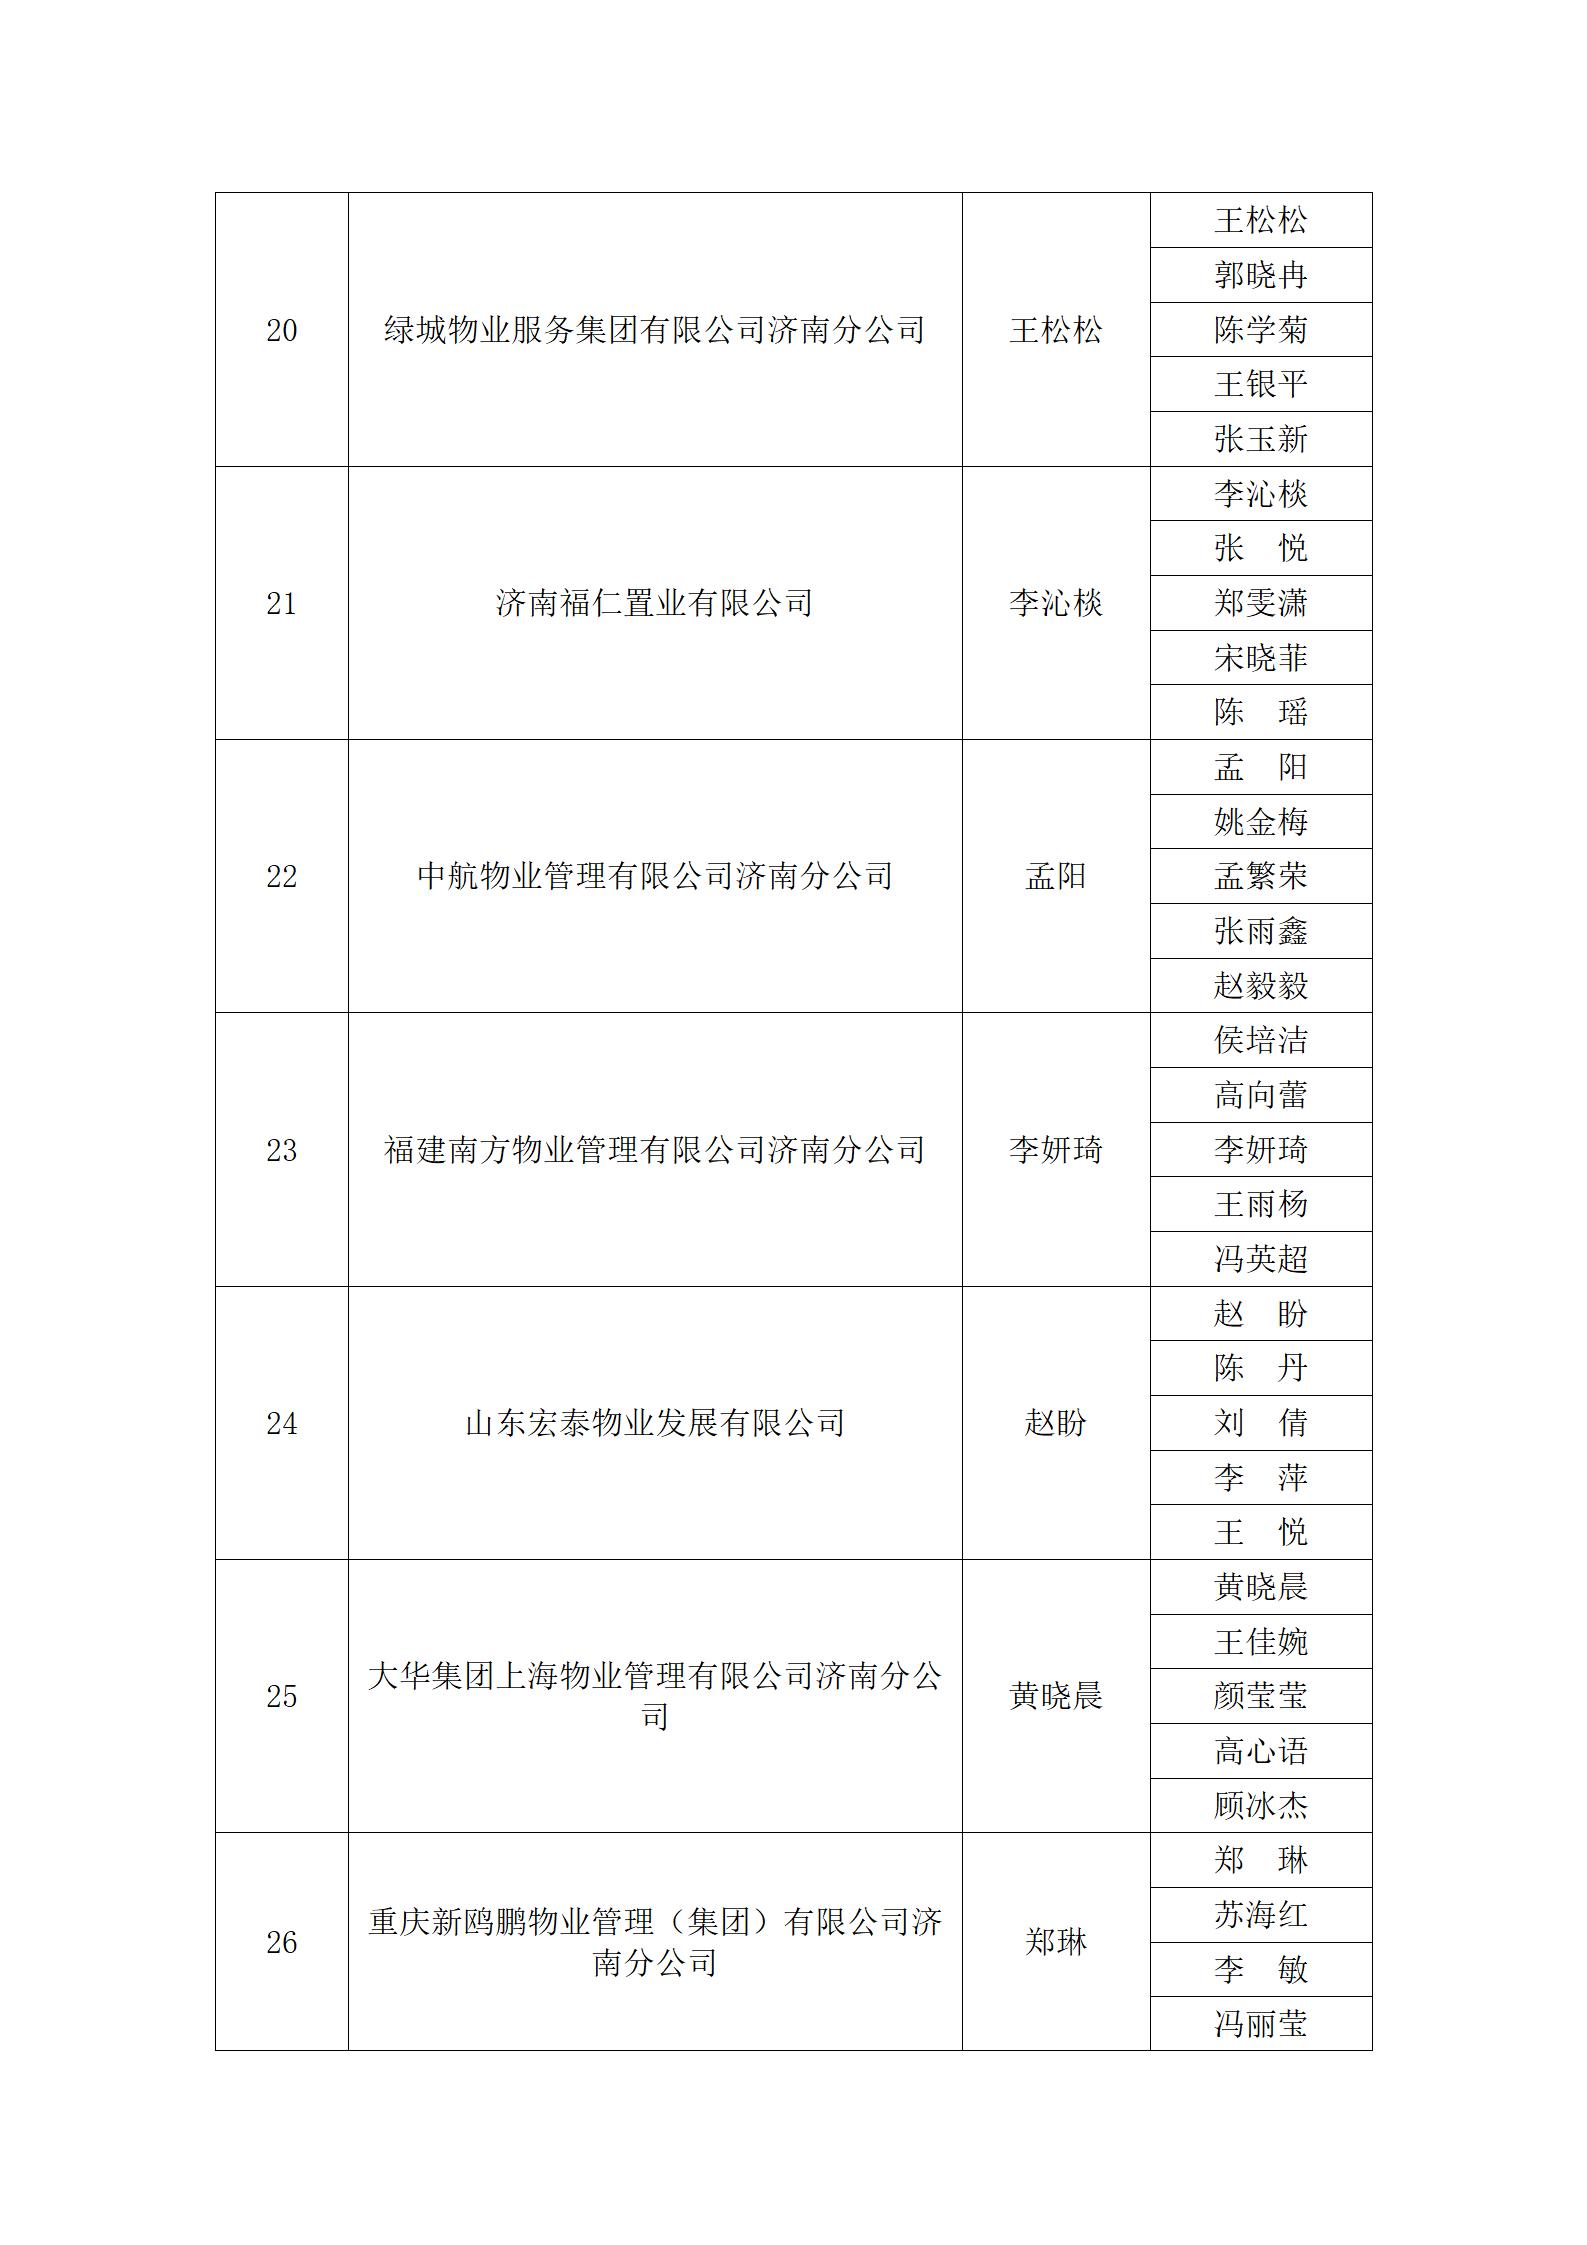 关于“明德杯”第六届济南市物业服务行业职业技能竞赛选手名单的公示_14